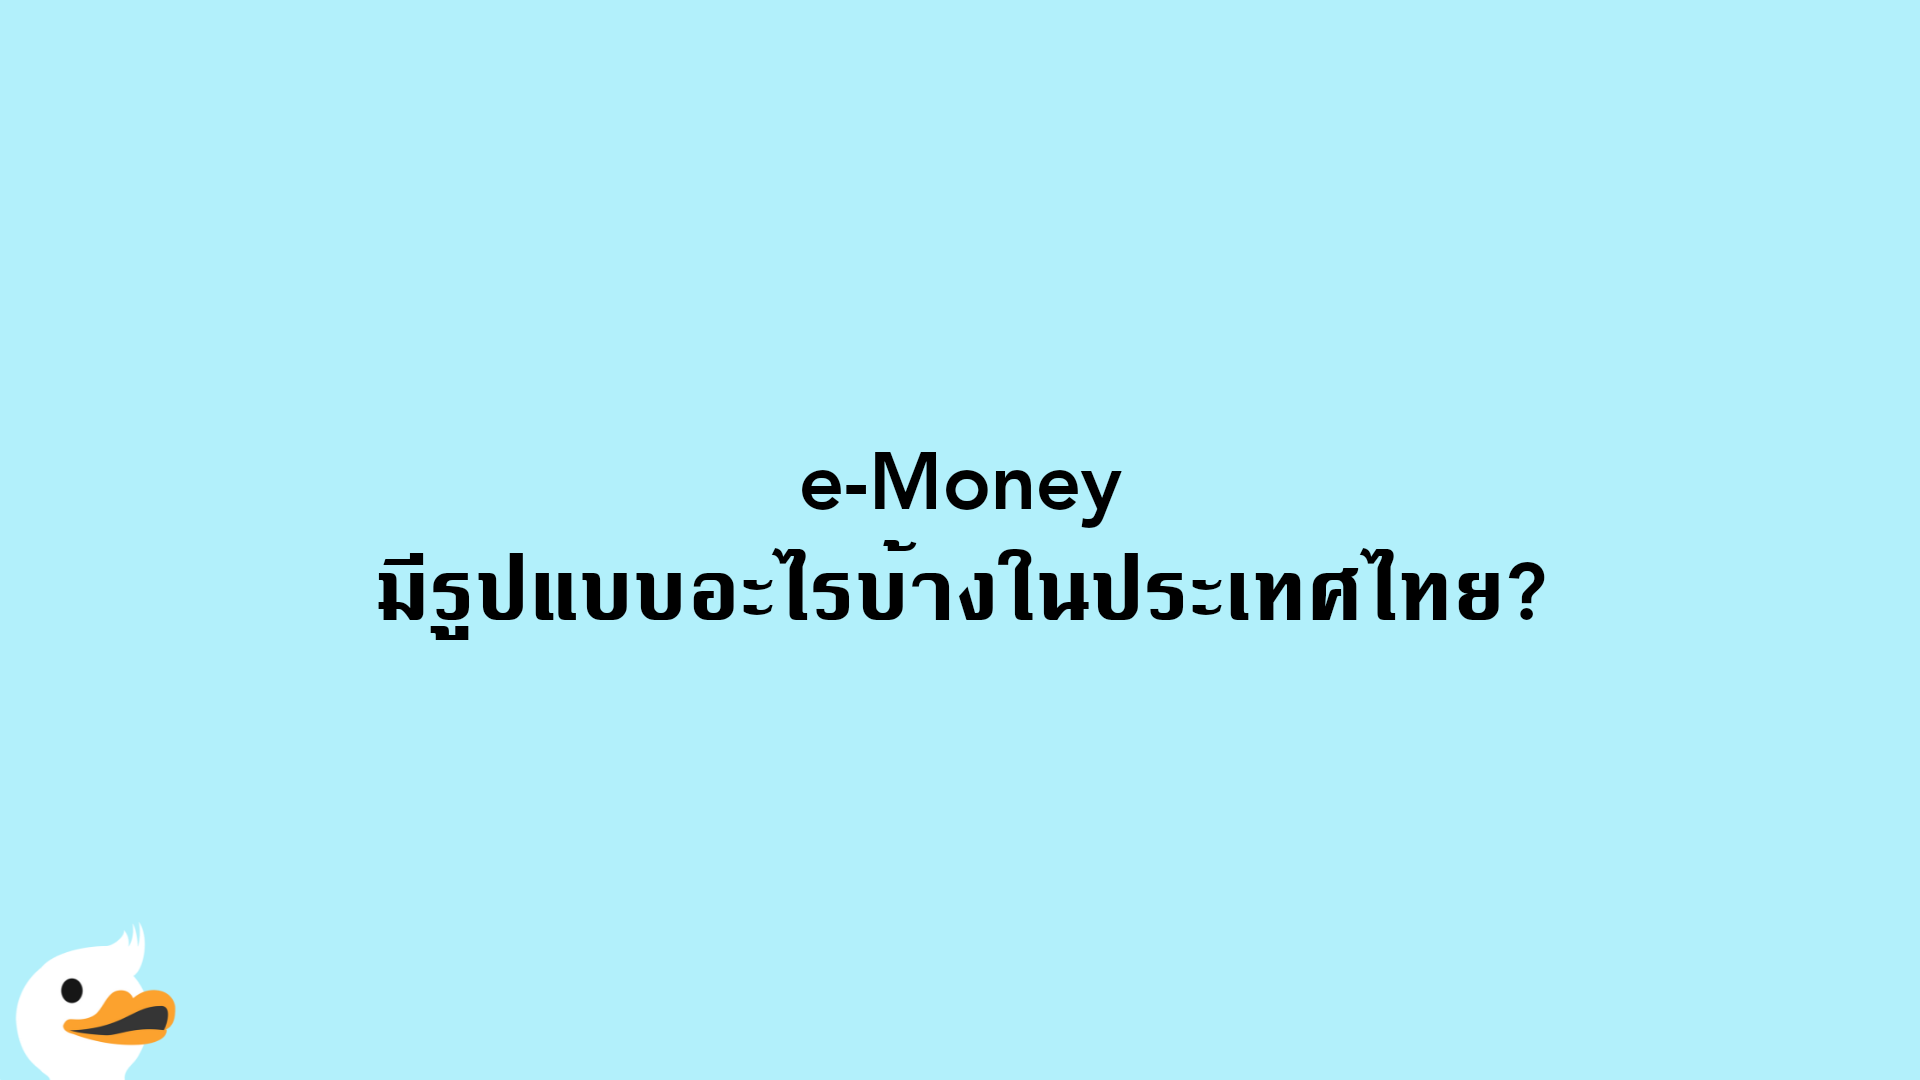 e-Money มีรูปแบบอะไรบ้างในประเทศไทย?